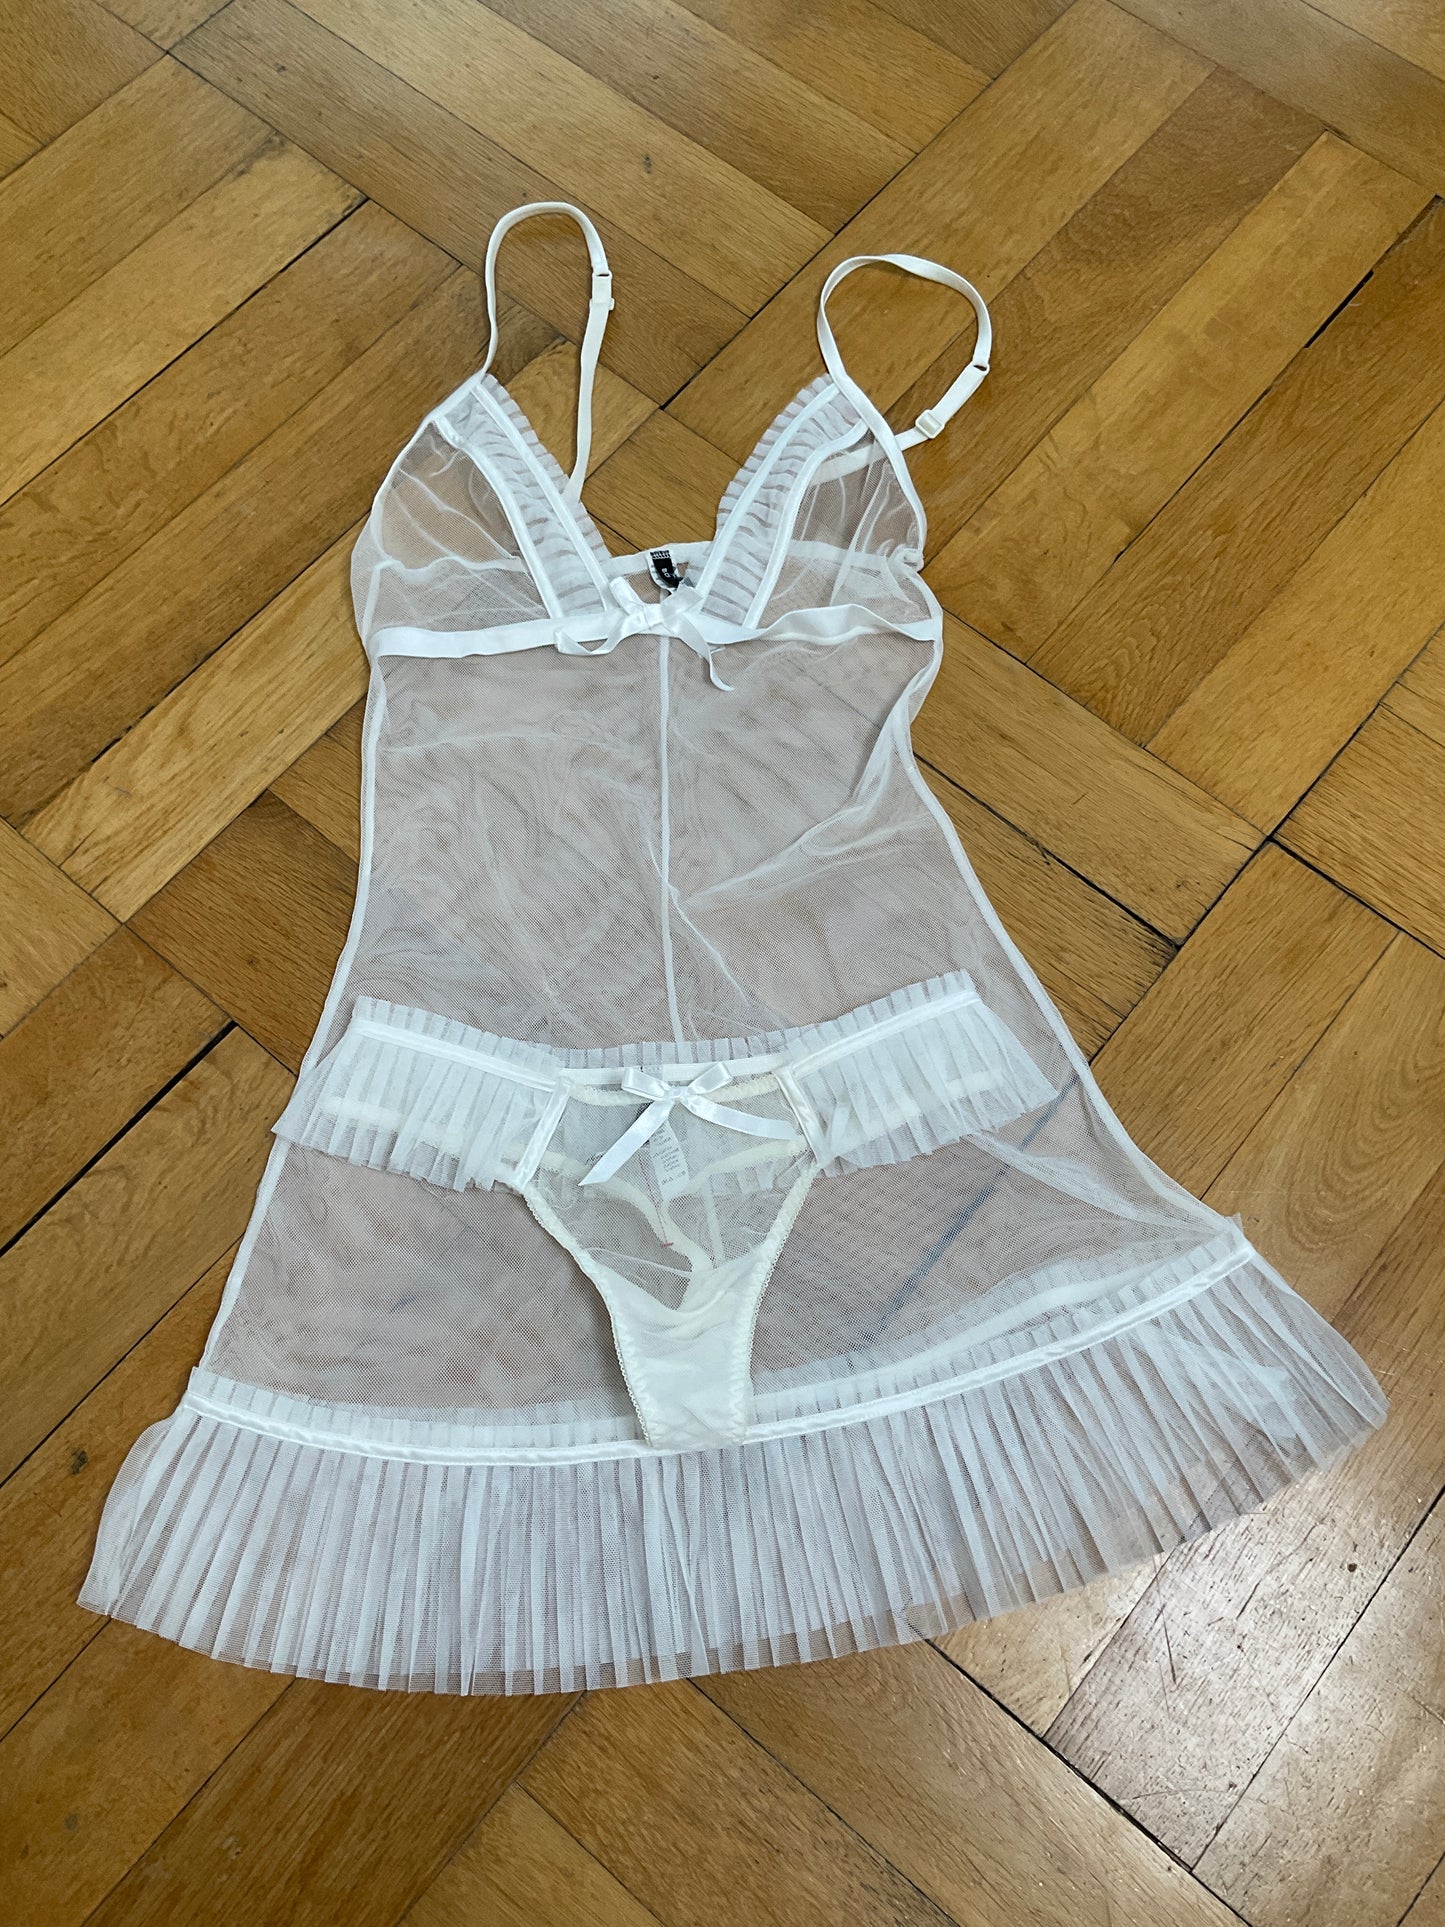 Italian lingerie set